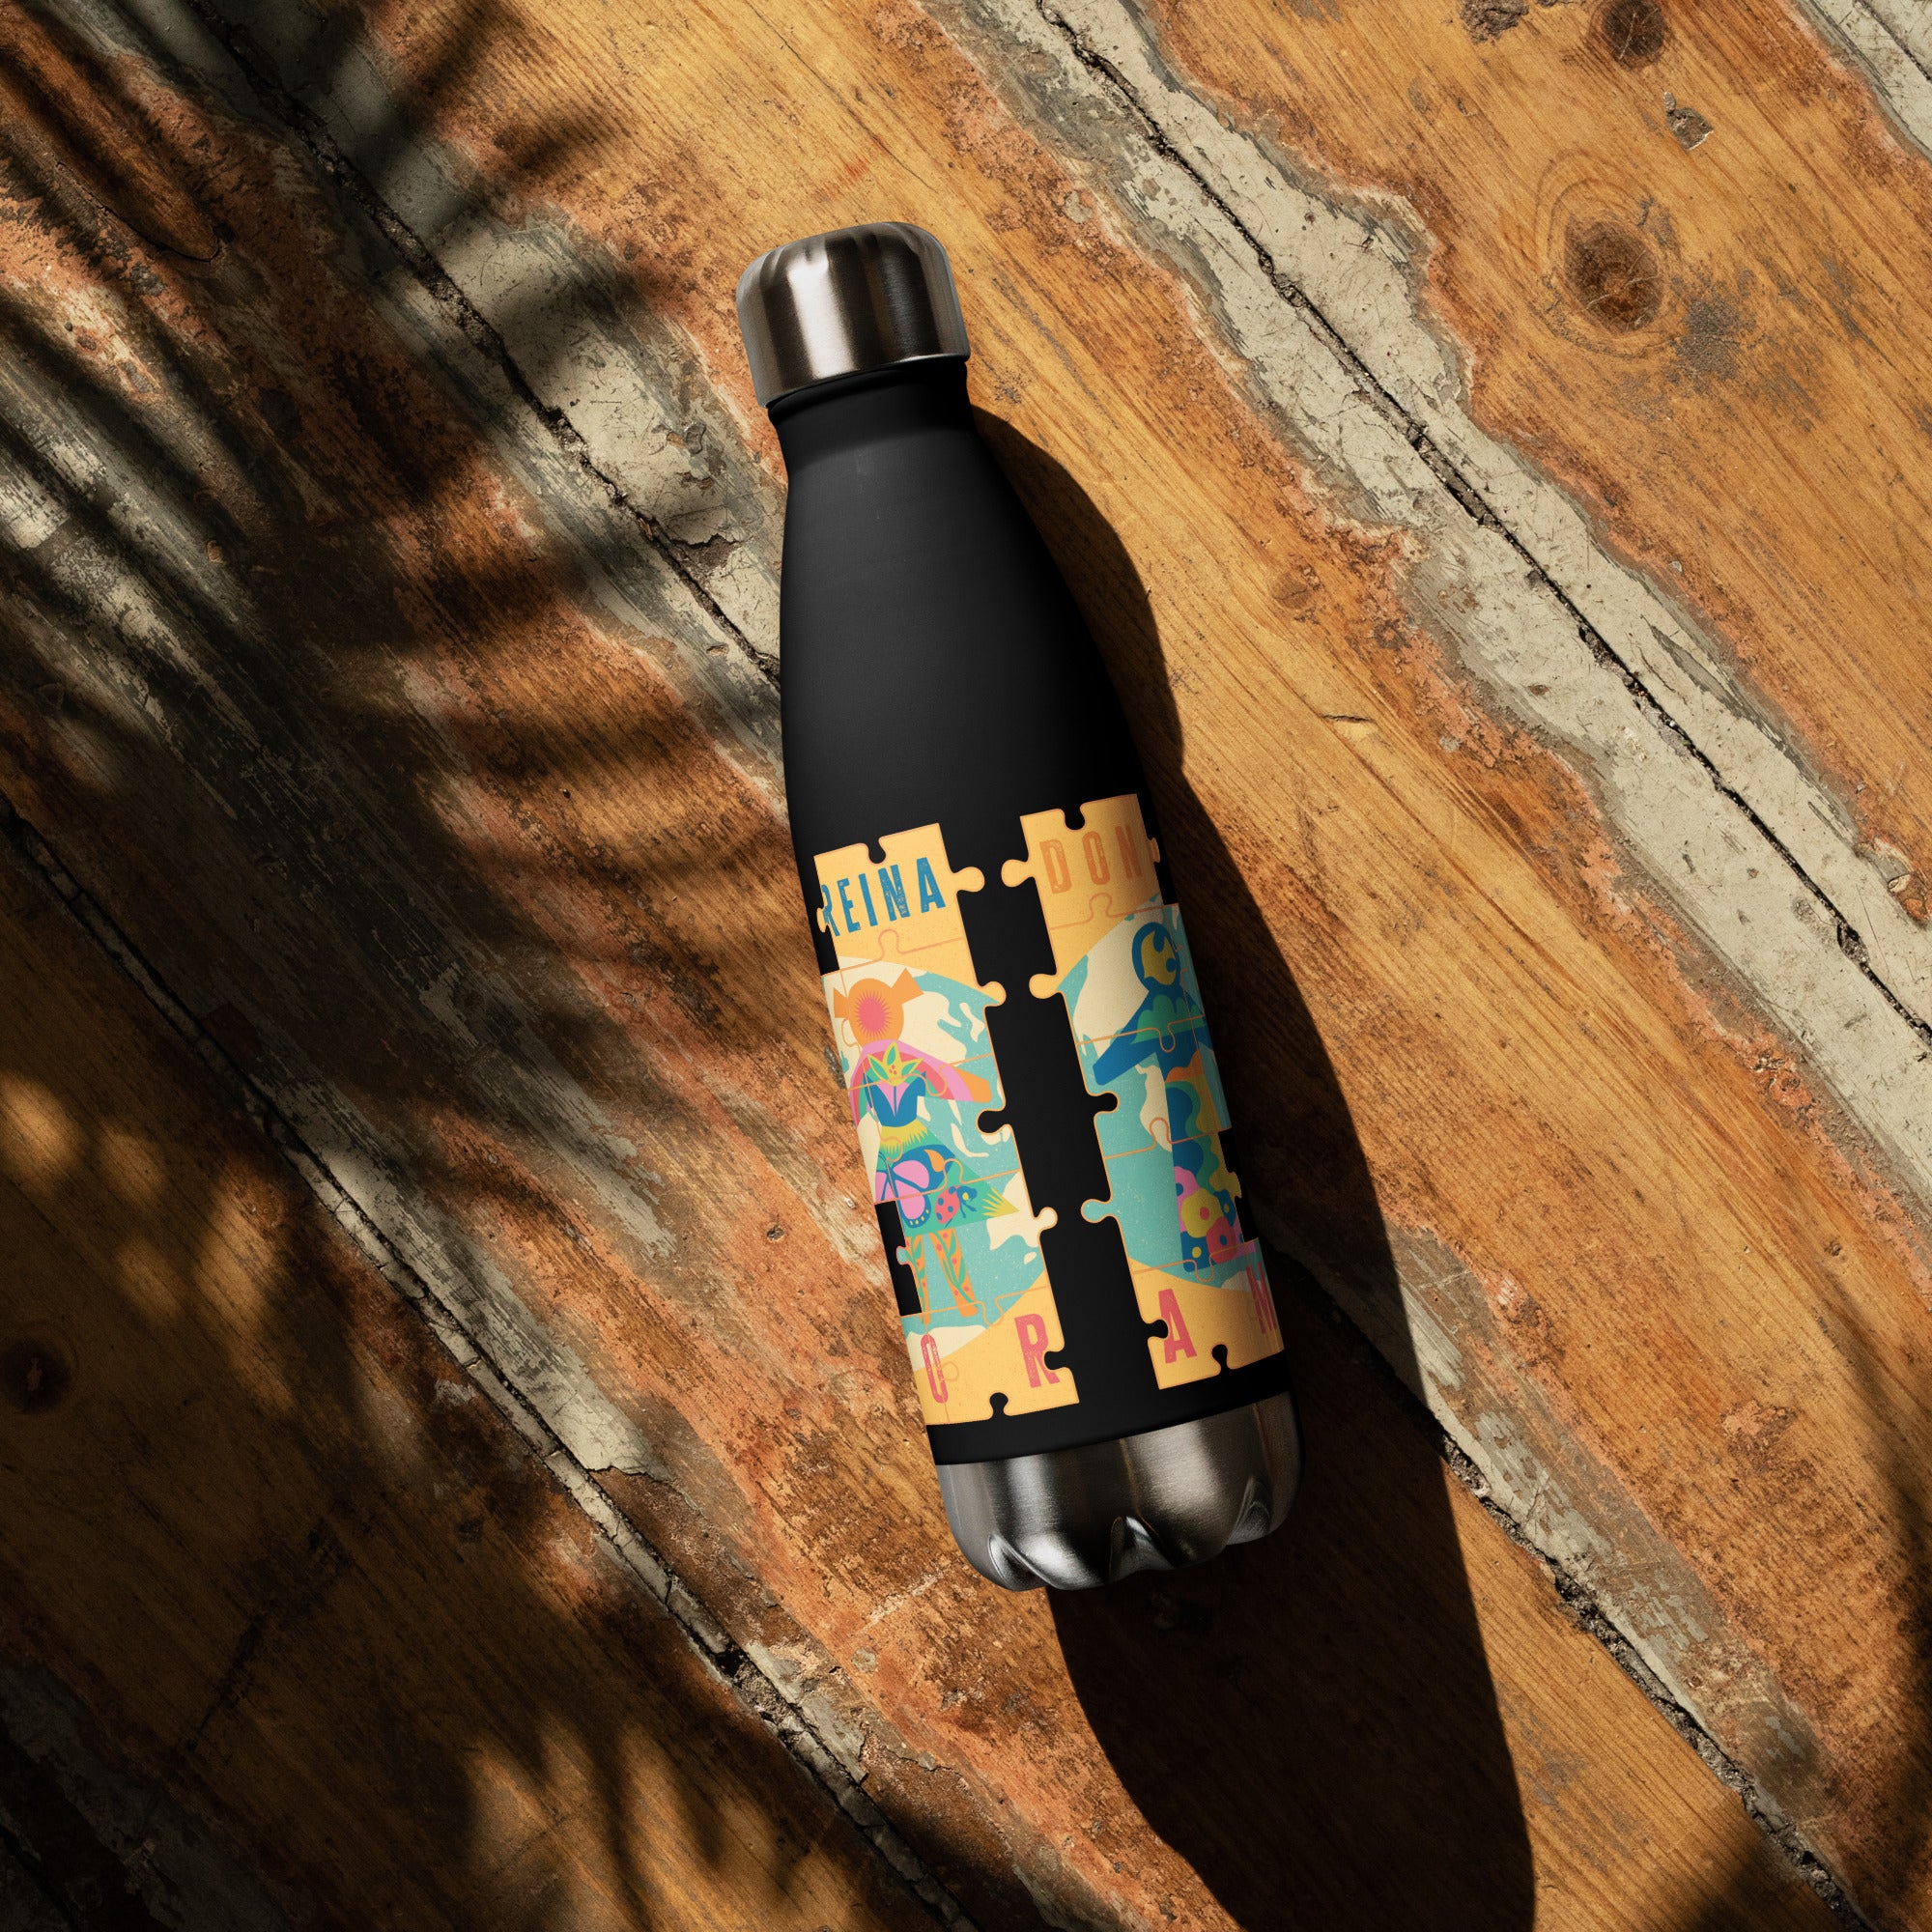 stainless-steel-water-bottle-black-17-oz-front-65fb73855e46f.jpg